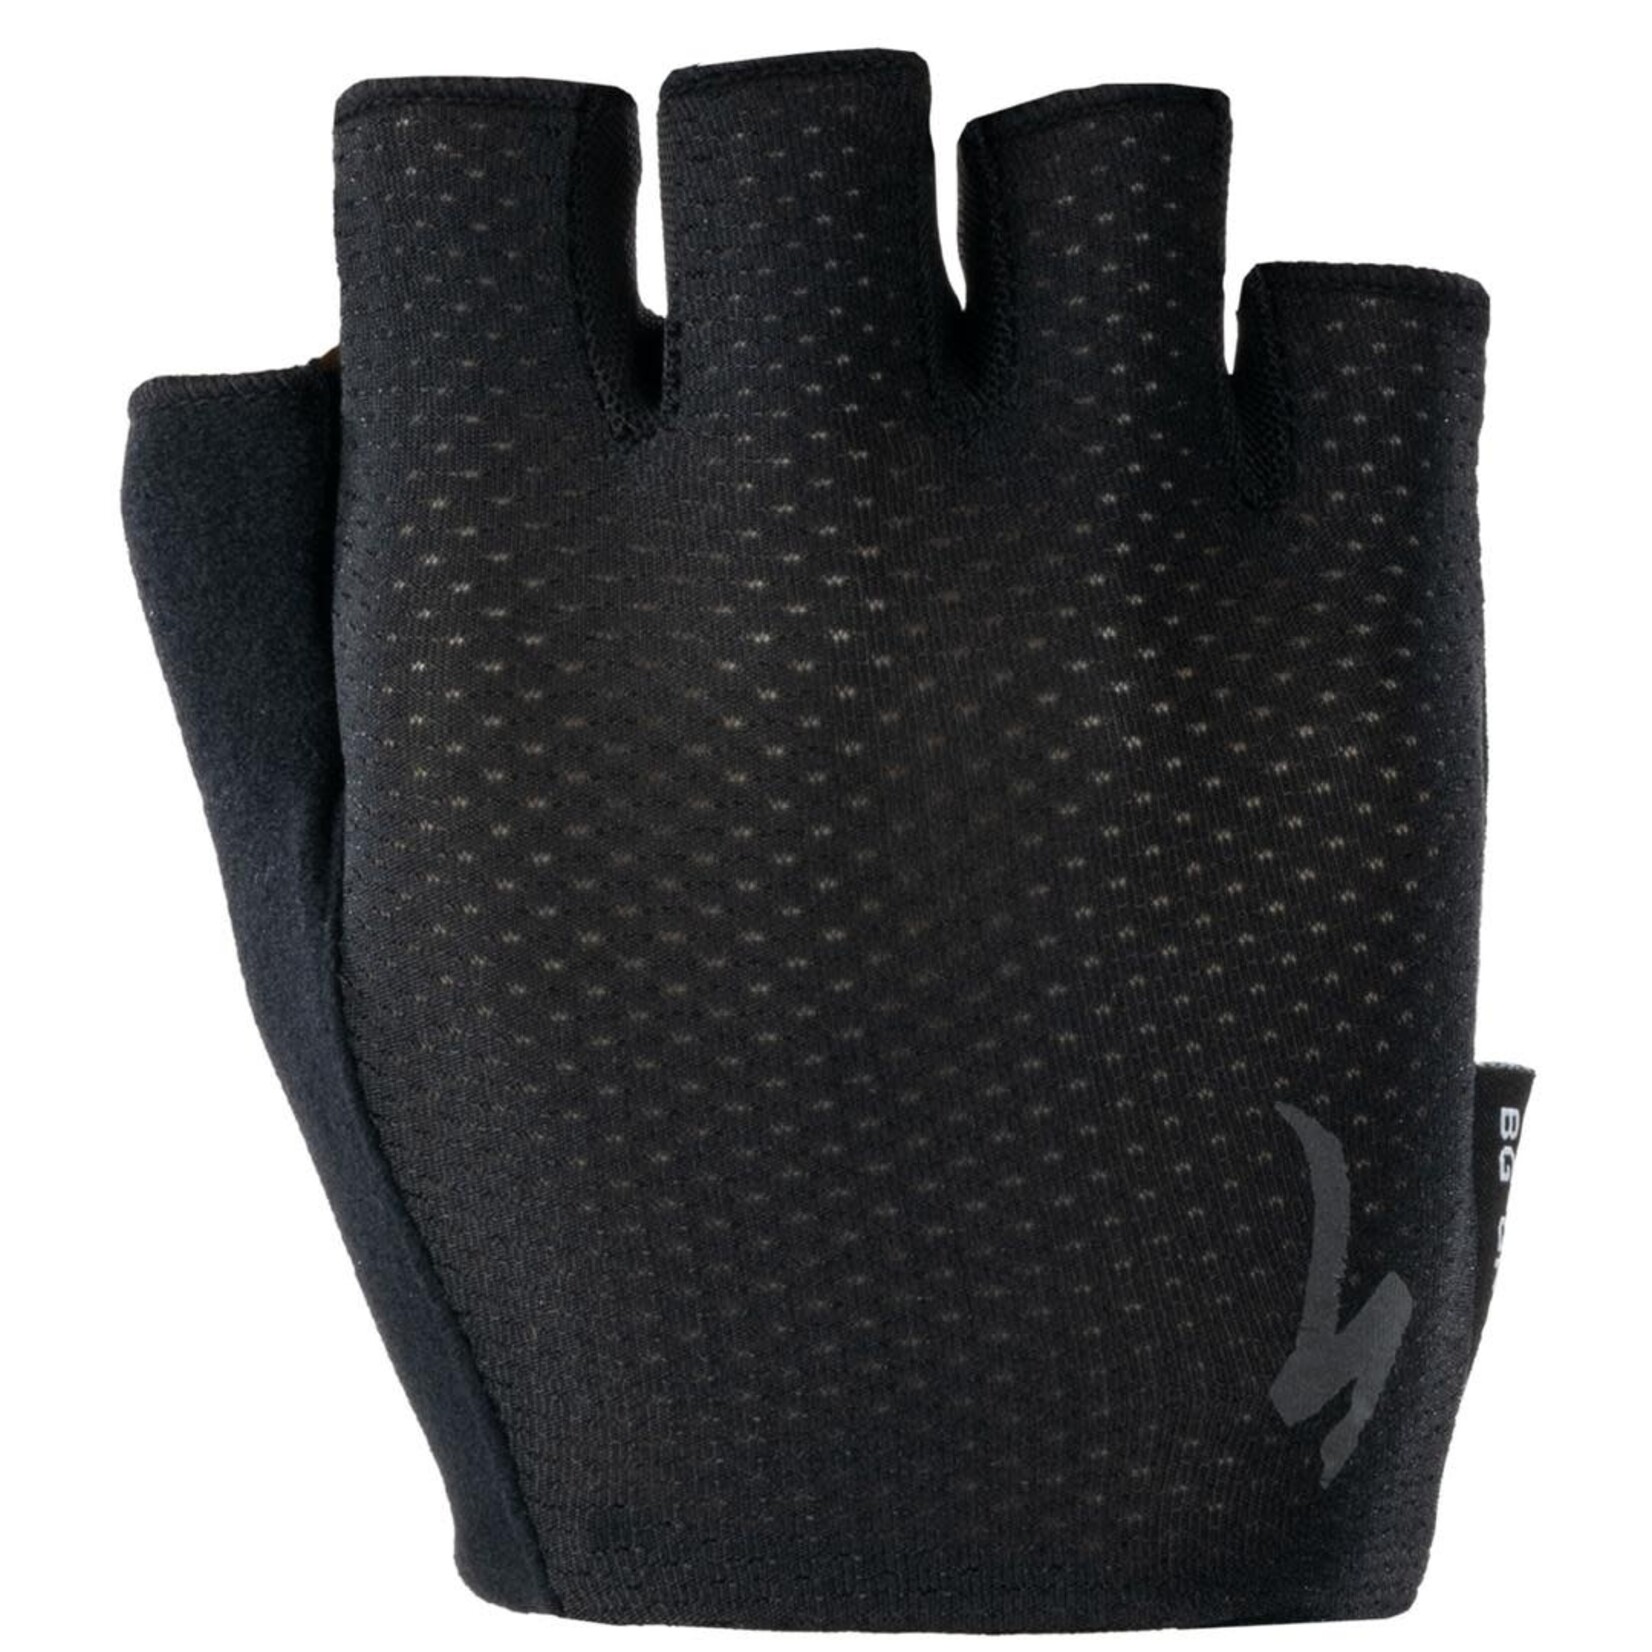 Specialized Mens Body Geometry Grail Short Finger Gloves in Black